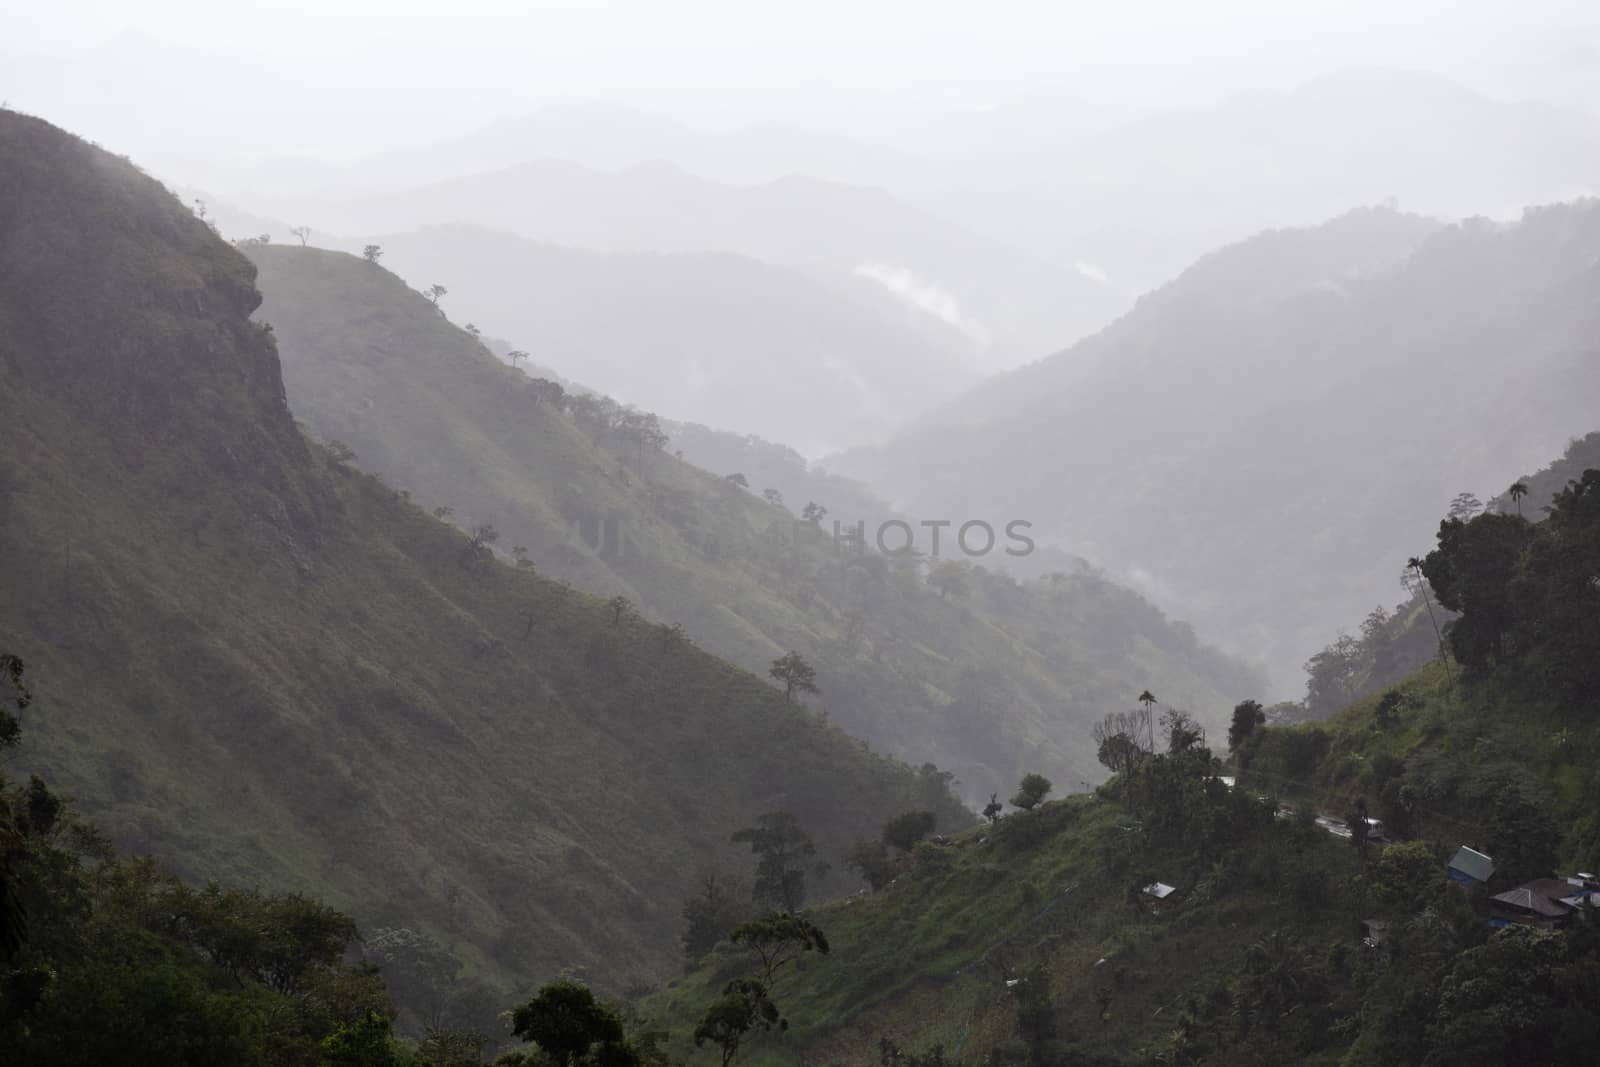 Ella Sri Lanka mountain gap landscape misty early morning view across valley by kgboxford